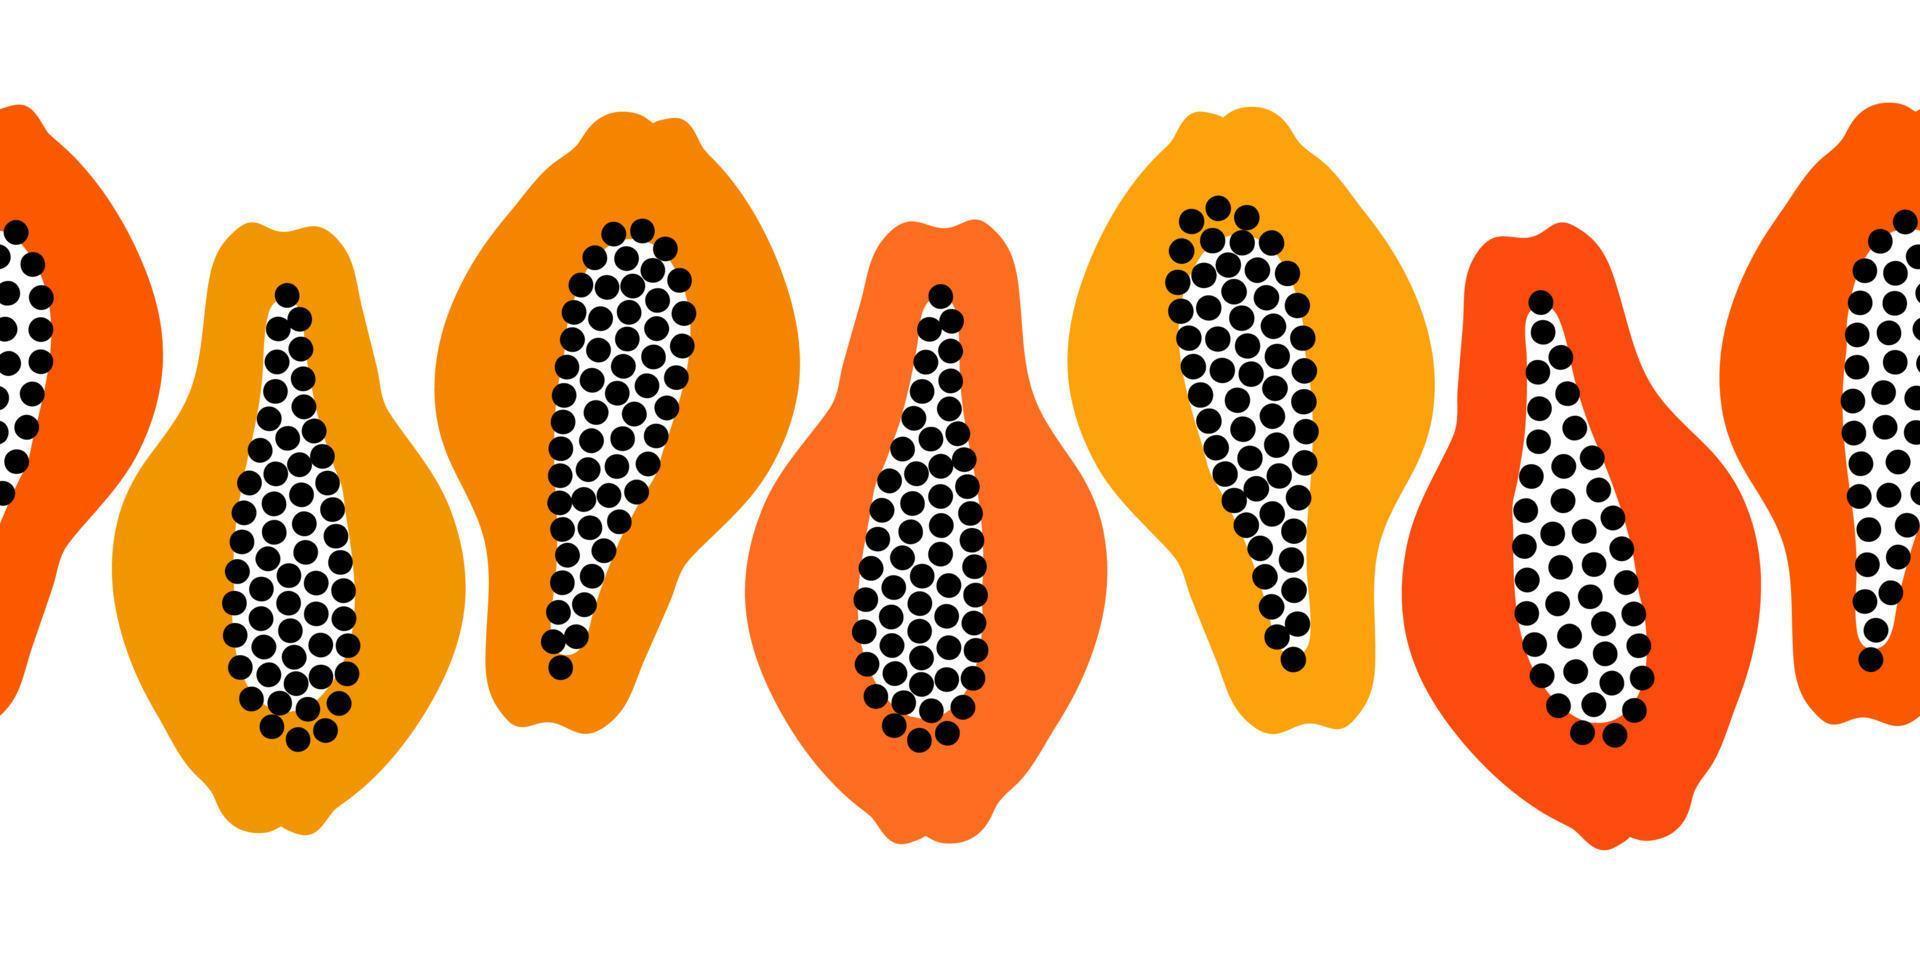 patrón transparente de vector con frutas. colorido borde repetible minimalista dibujado a mano. línea interminable de mitades de papaya.